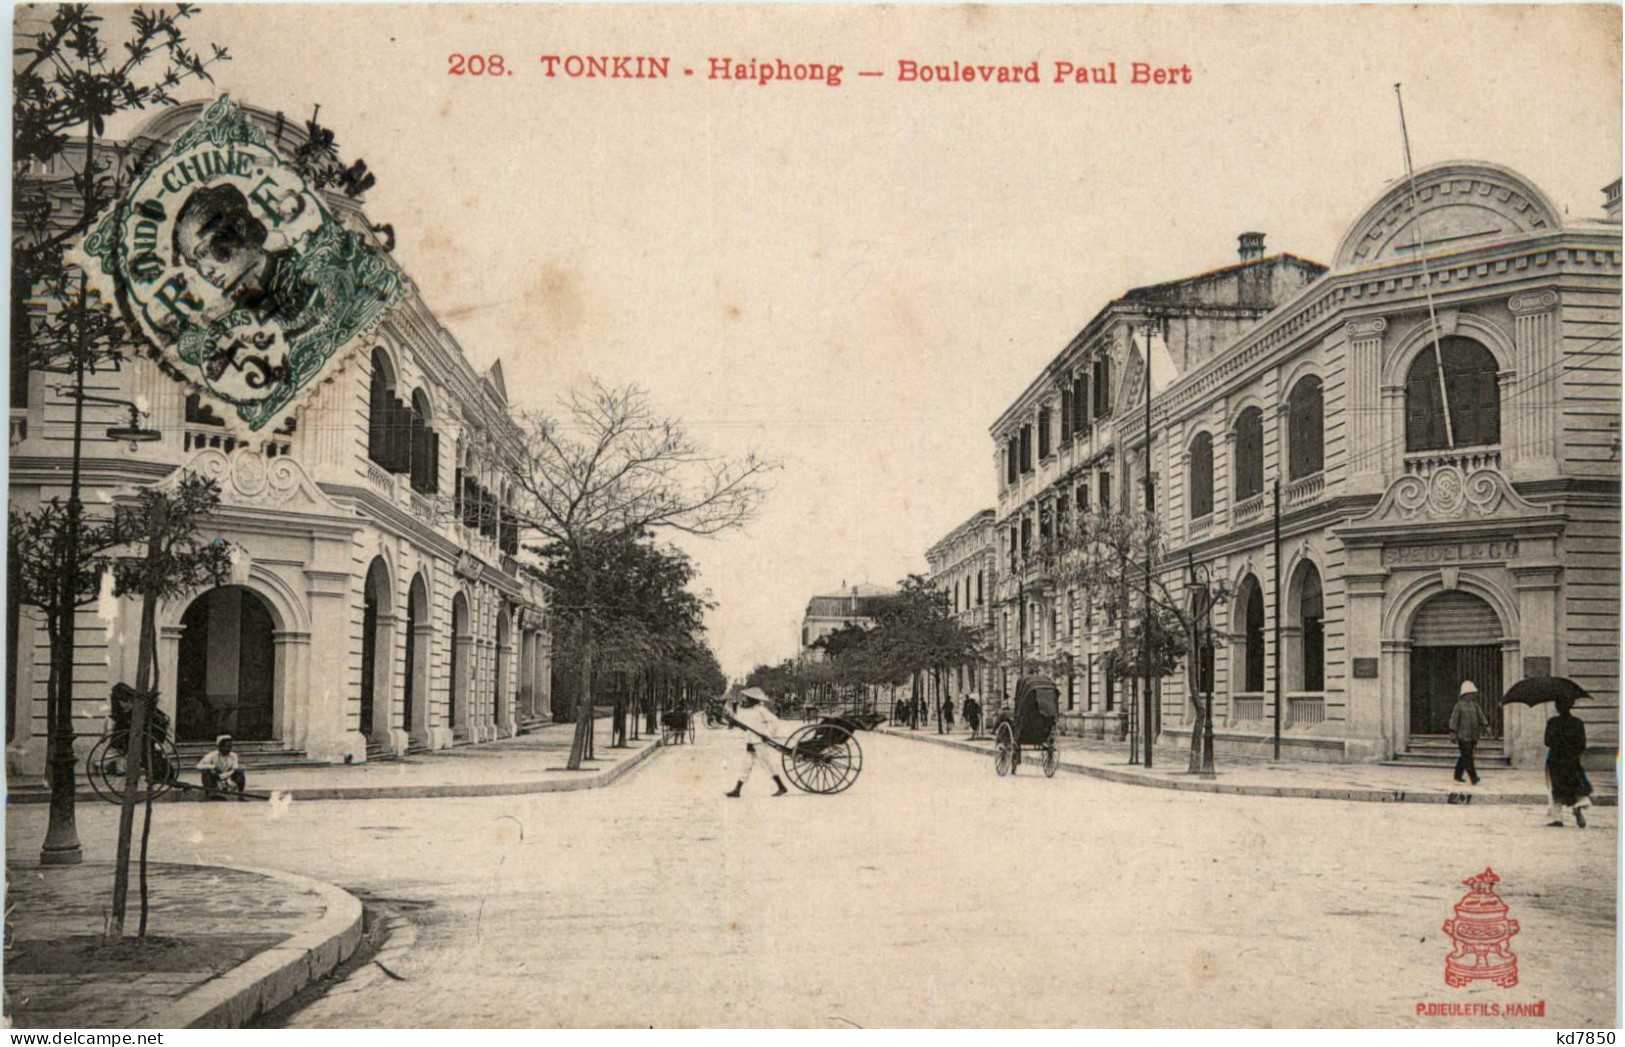 Tonkin - Hanoi - Boulevard Paul Bert - Vietnam